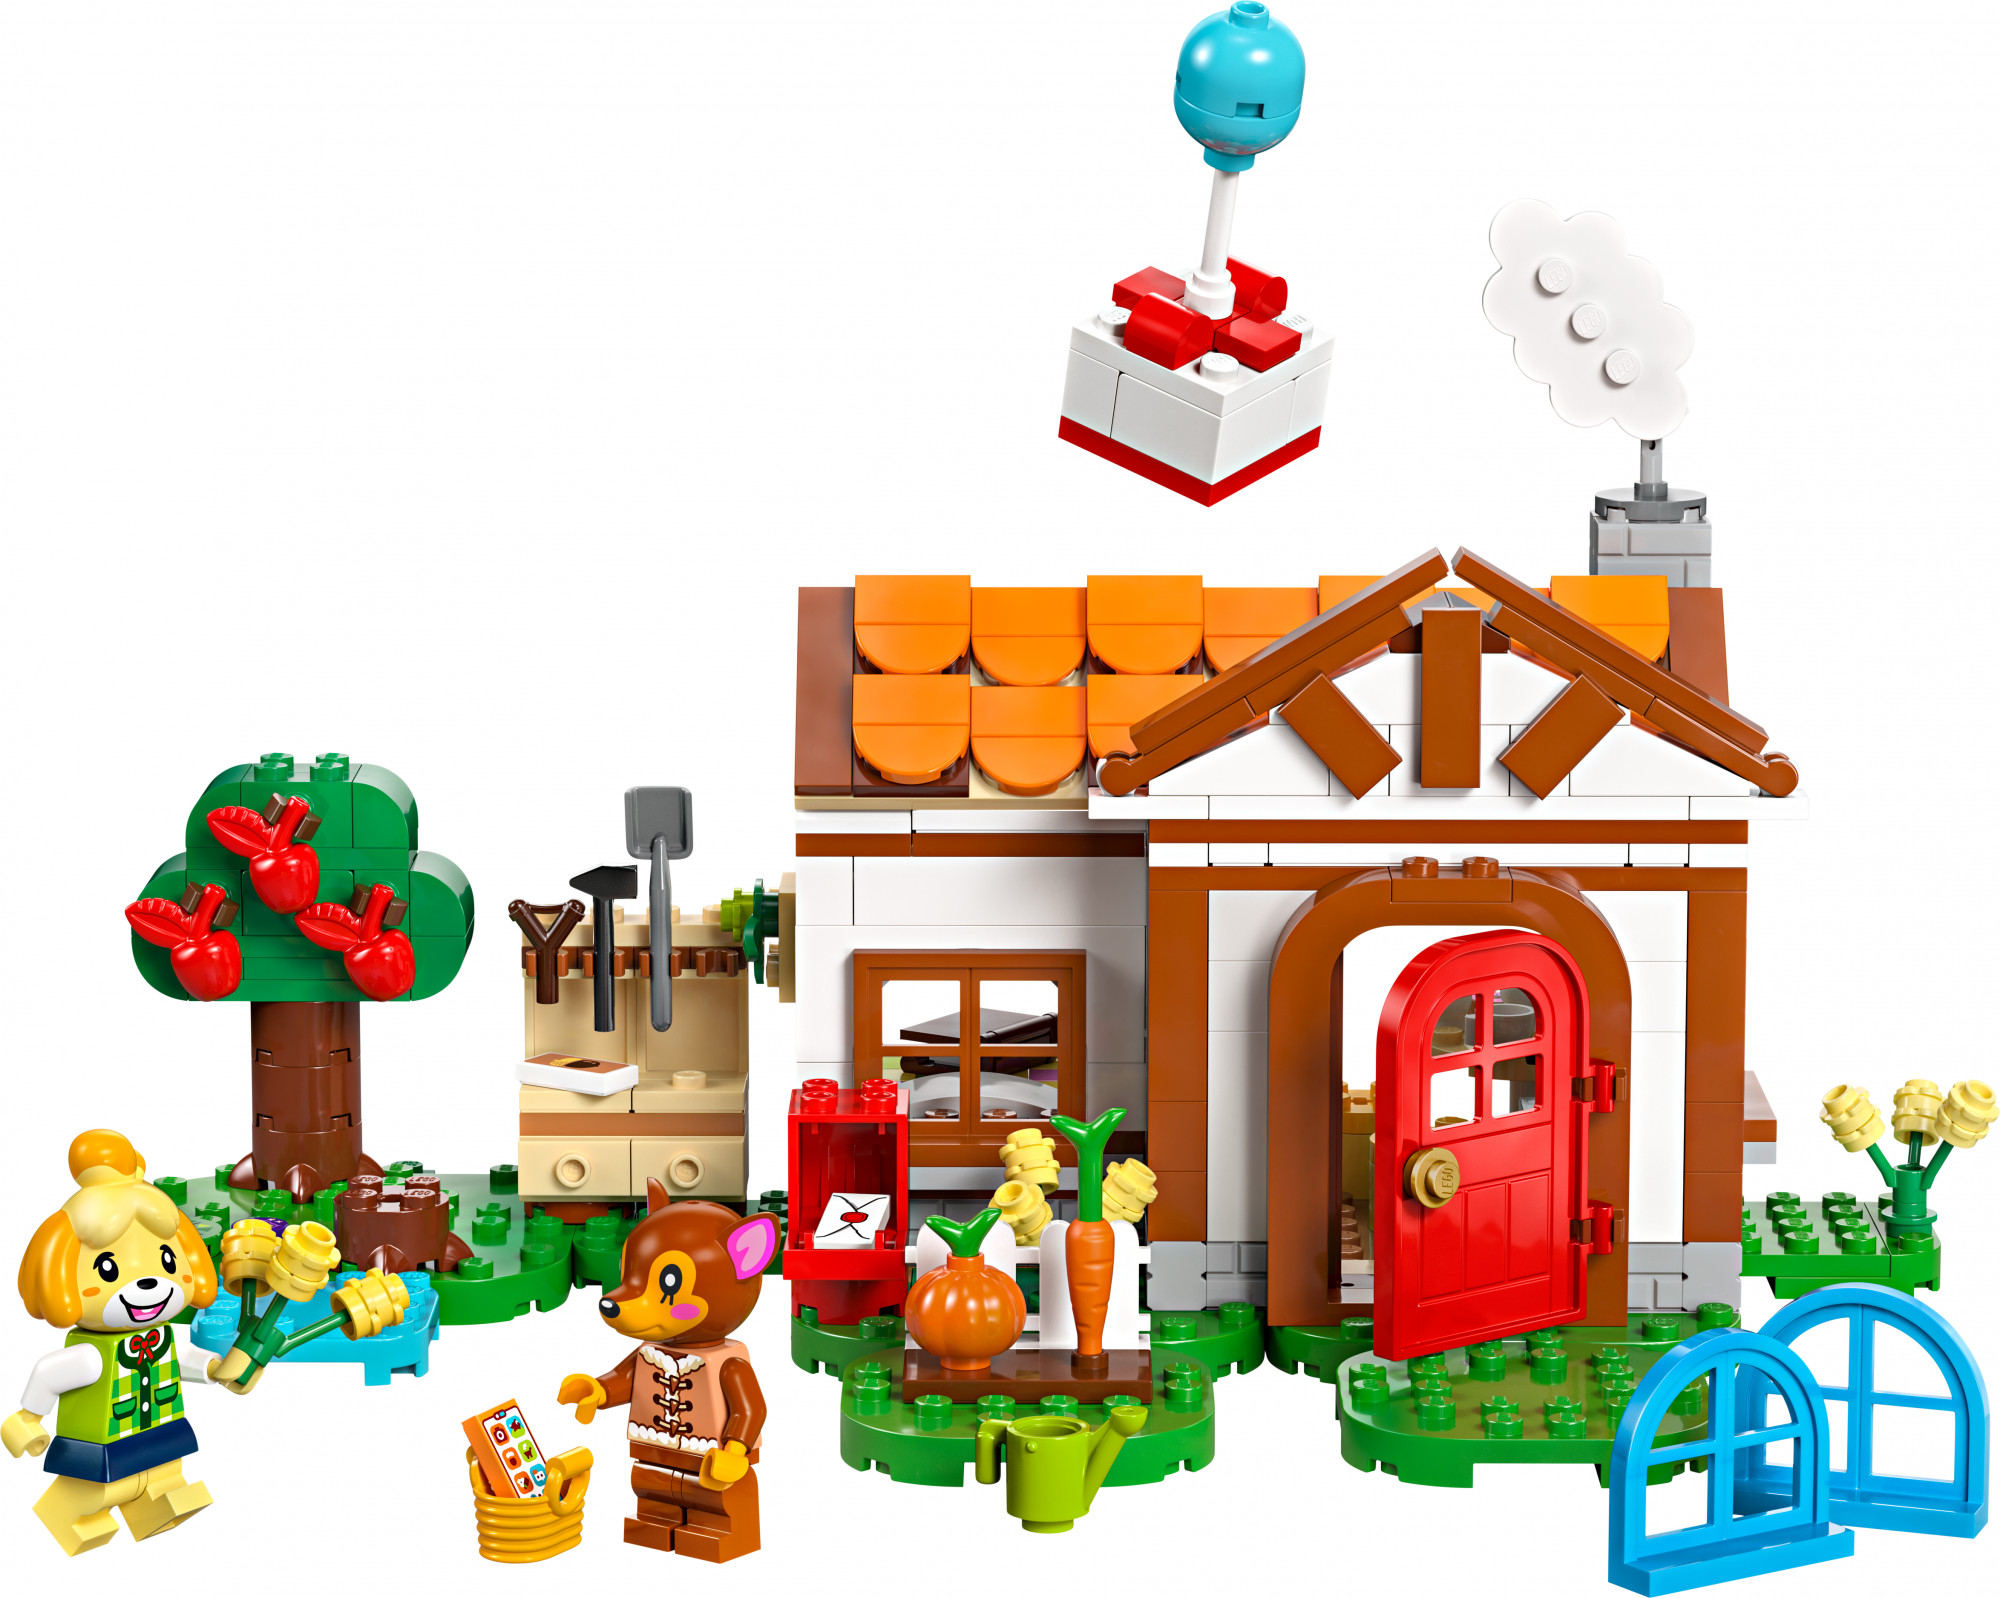 LEGO Animal Crossing Візит у гості до Isabelle (77049) - зображення 1